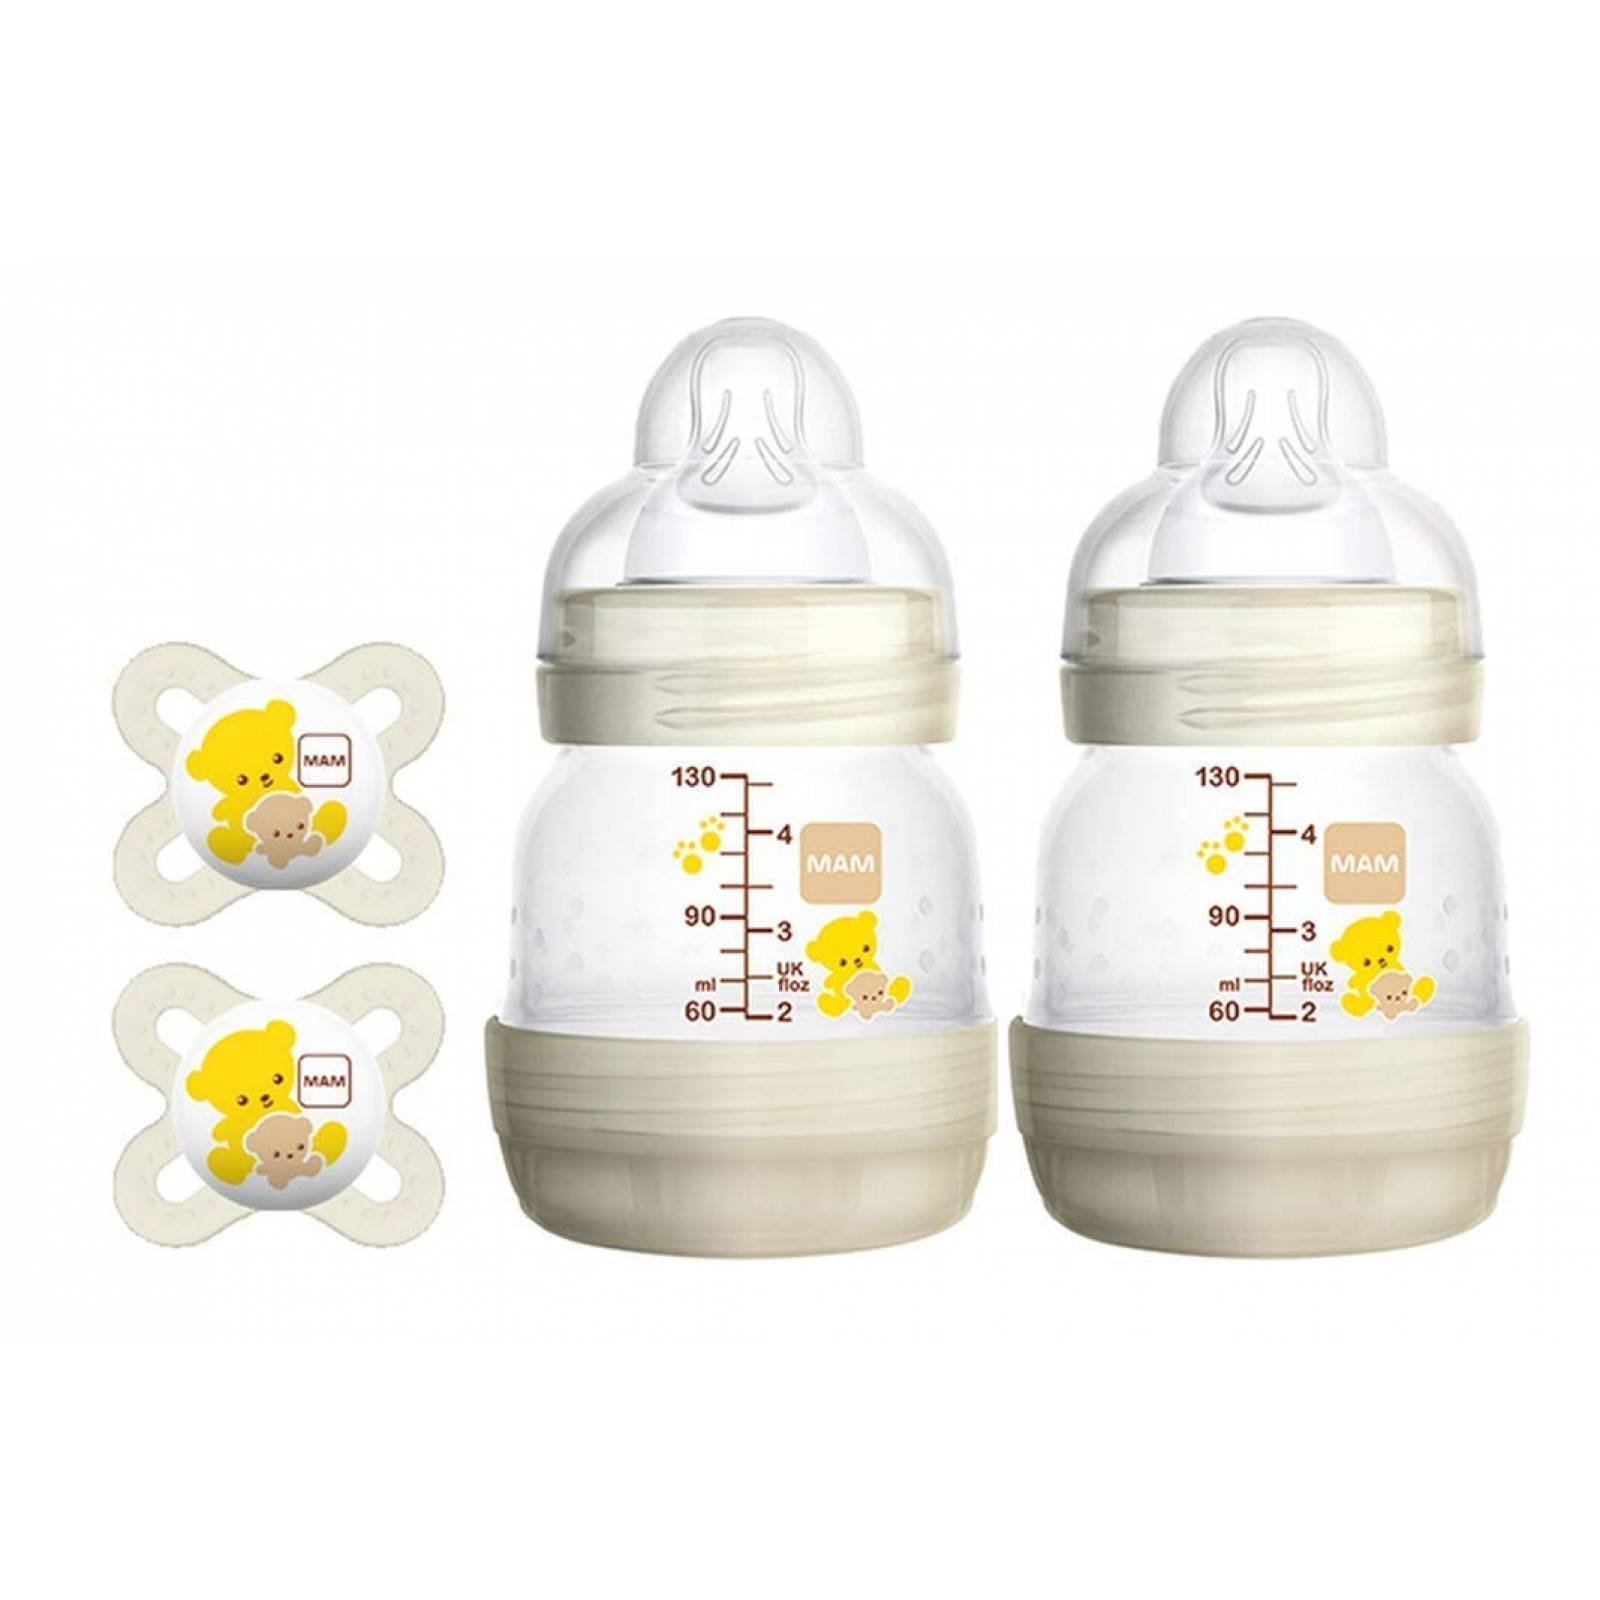 Biberones MAM - Calidad y comodidad para la alimentación de tu bebé